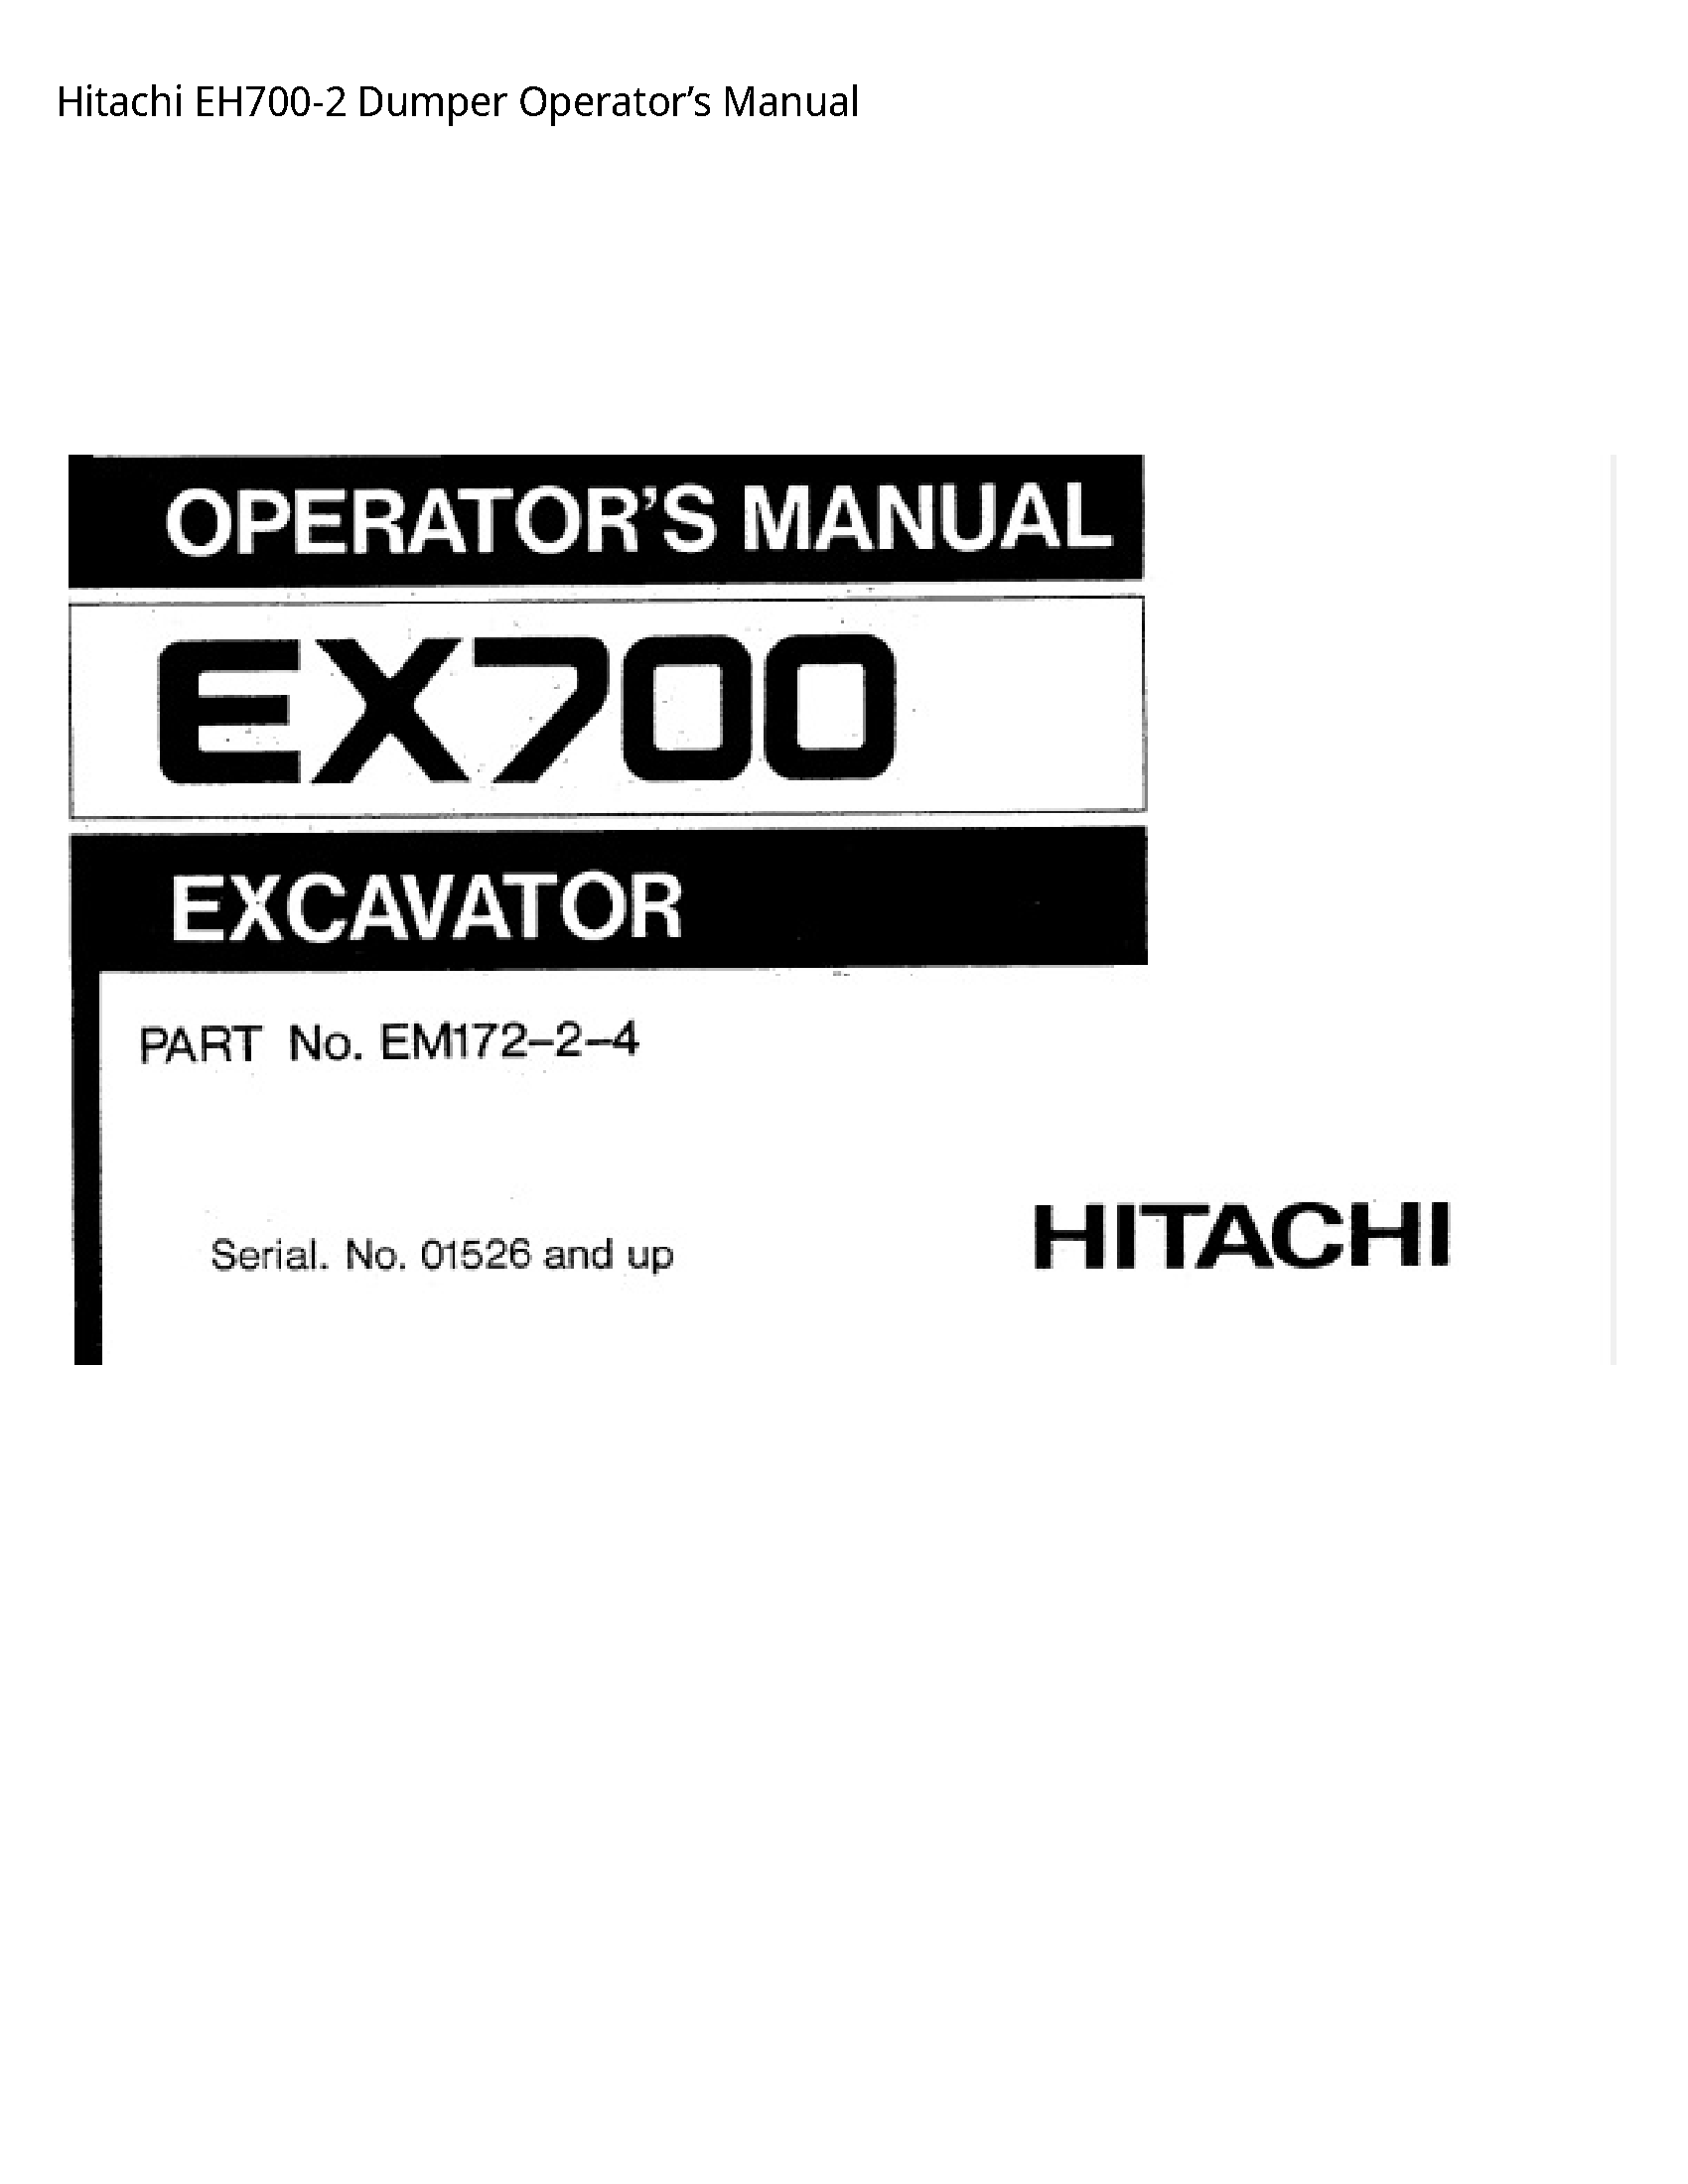 Hitachi EH700-2 Dumper Operator’s manual